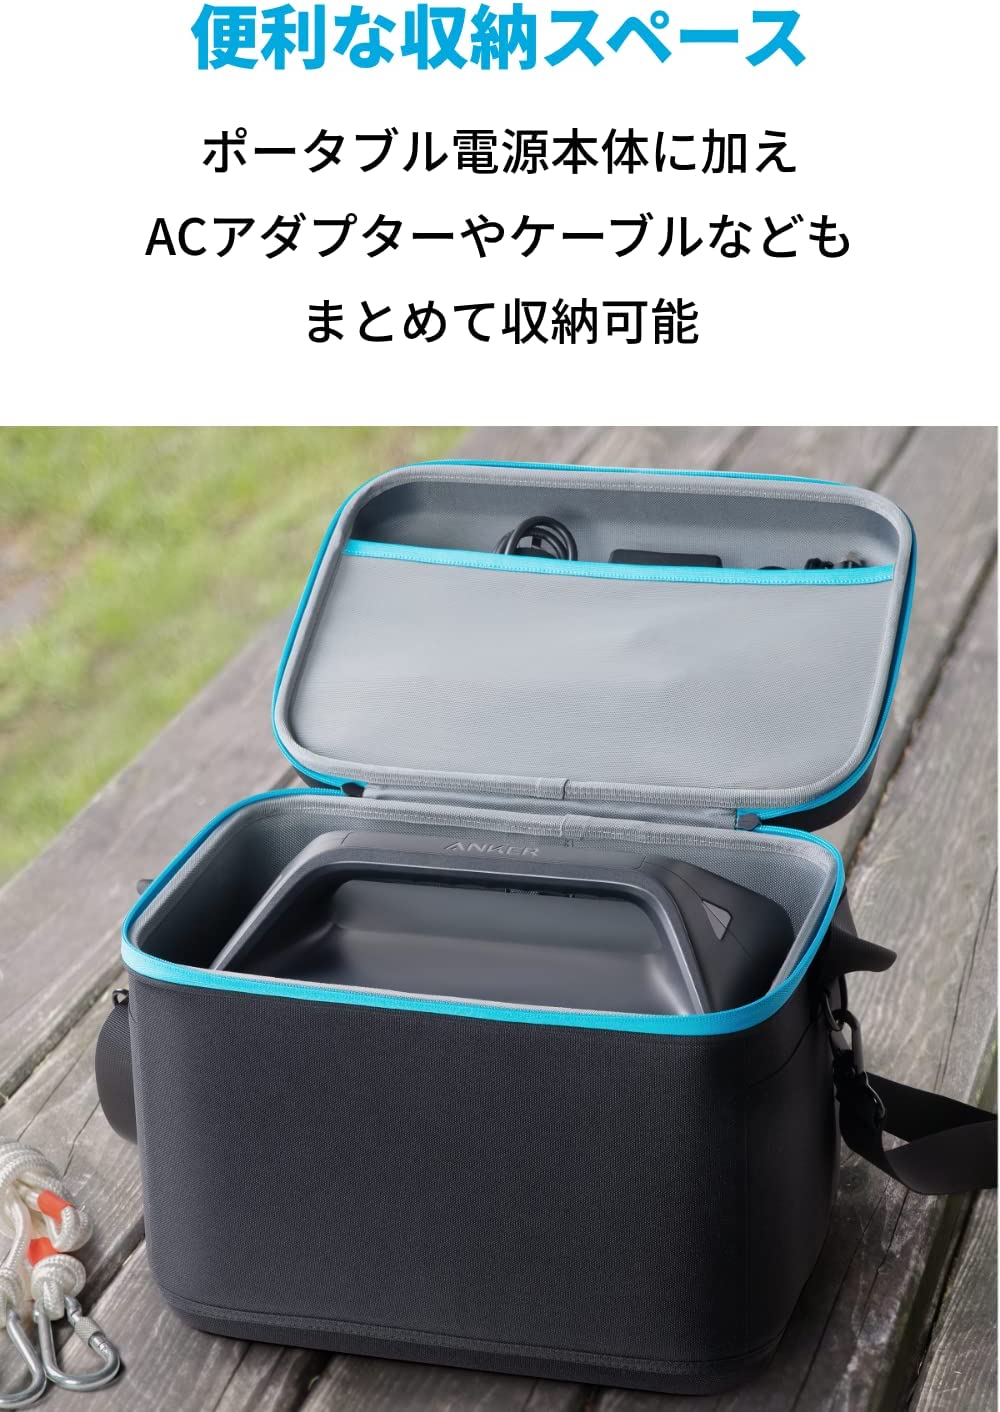 【1,000円OFFクーポン 9/11まで】Anker Carrying Case Bag (M Size)【高耐久/収納バッグ】中型PowerHouse用  アンカー・ダイレクト